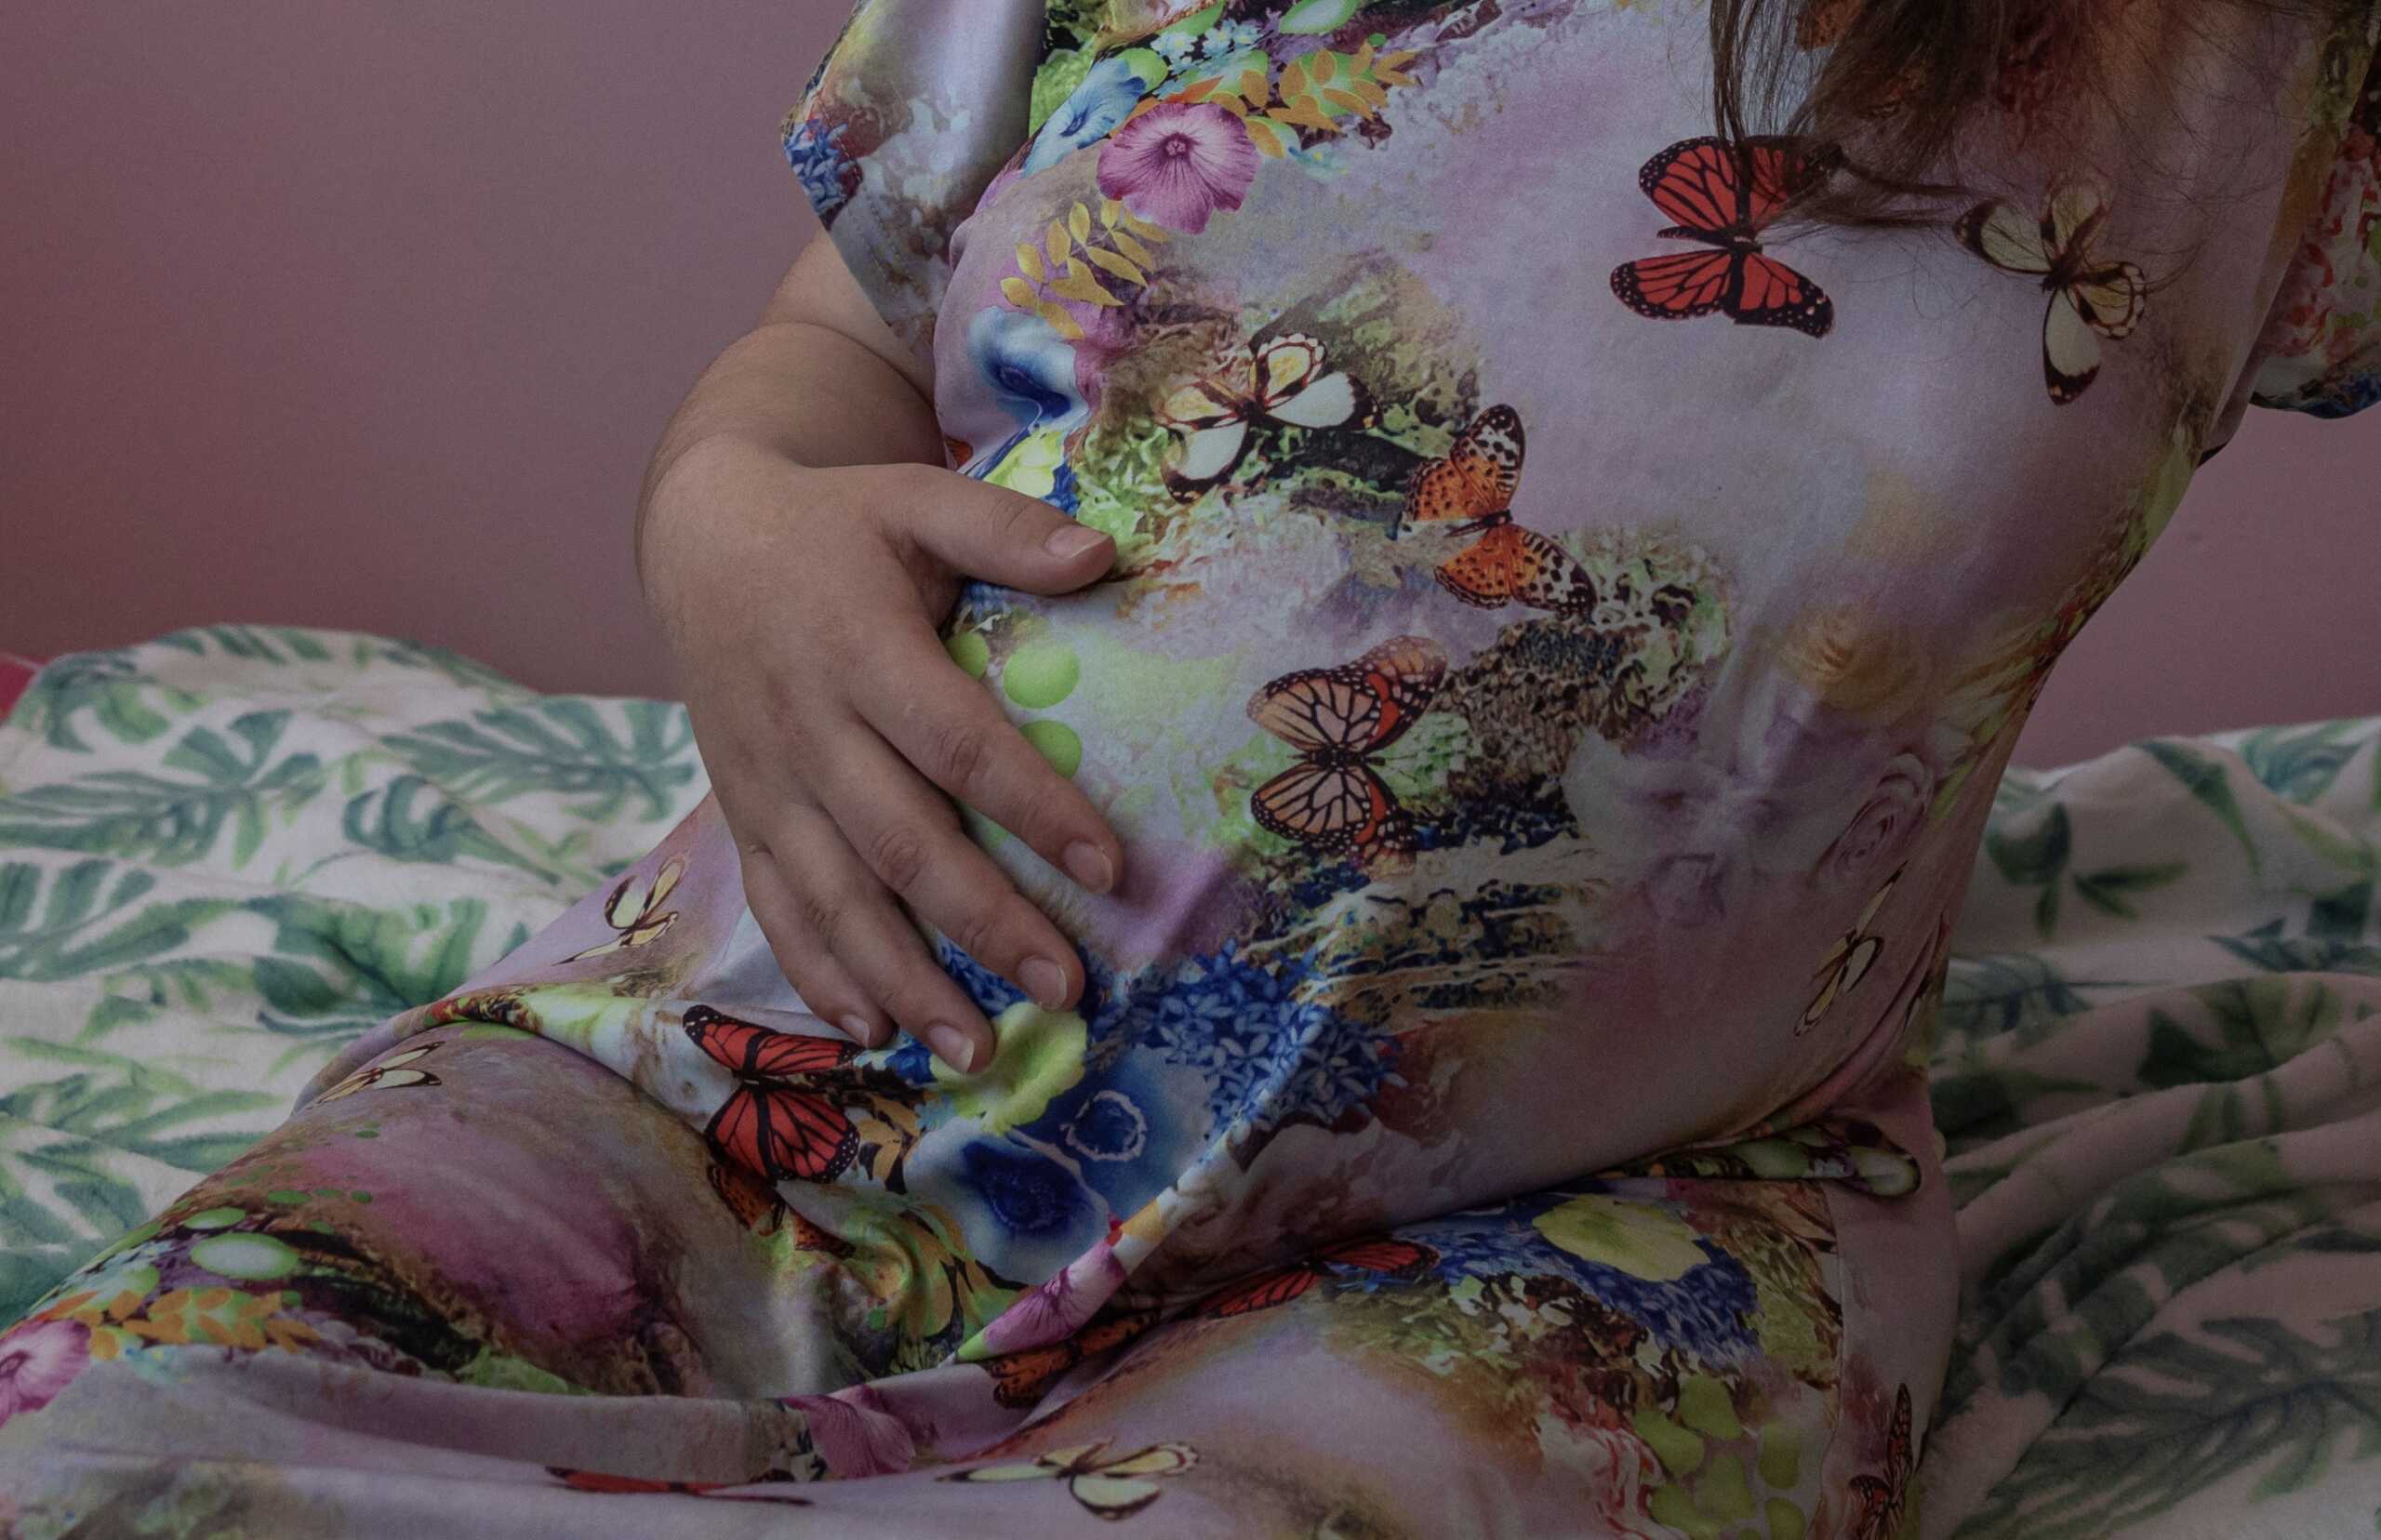 Ισπανία: Επιτροπή του ΟΗΕ ζητάει να αποζημιωθεί γυναίκα που έκανε καισαρική χωρίς τη συγκατάθεσή της